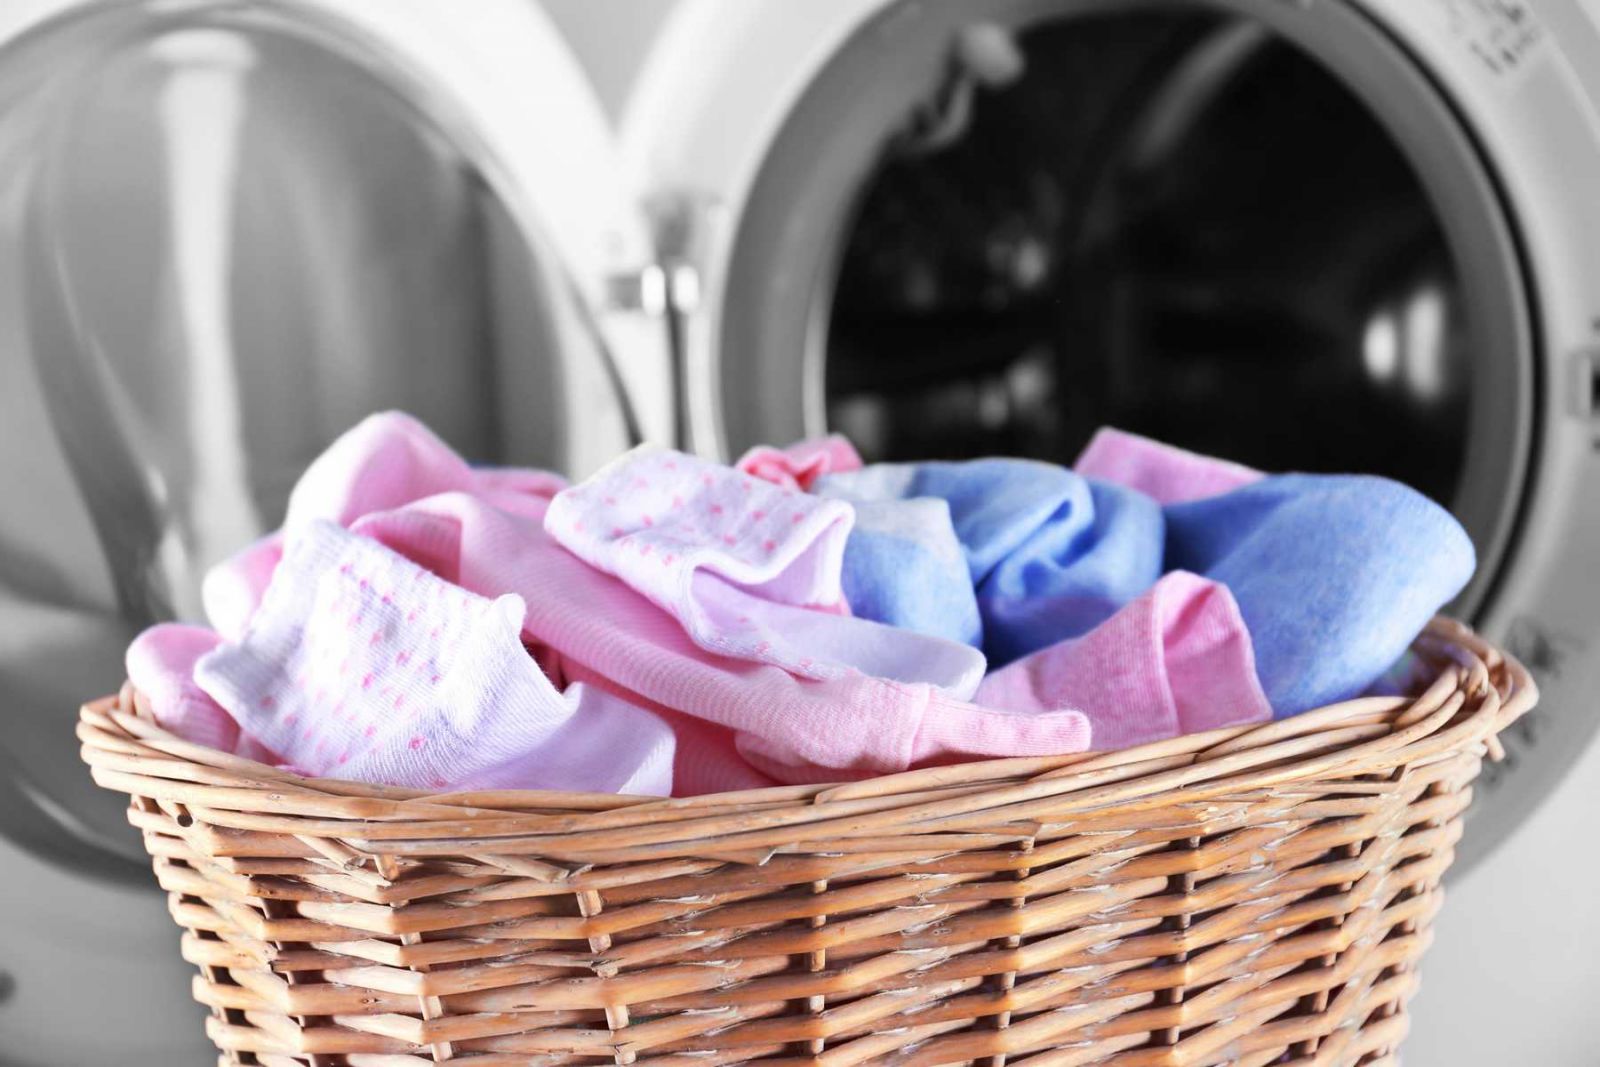 Giặt giũ và vệ sinh quần áo để bảo vệ sức khoẻ